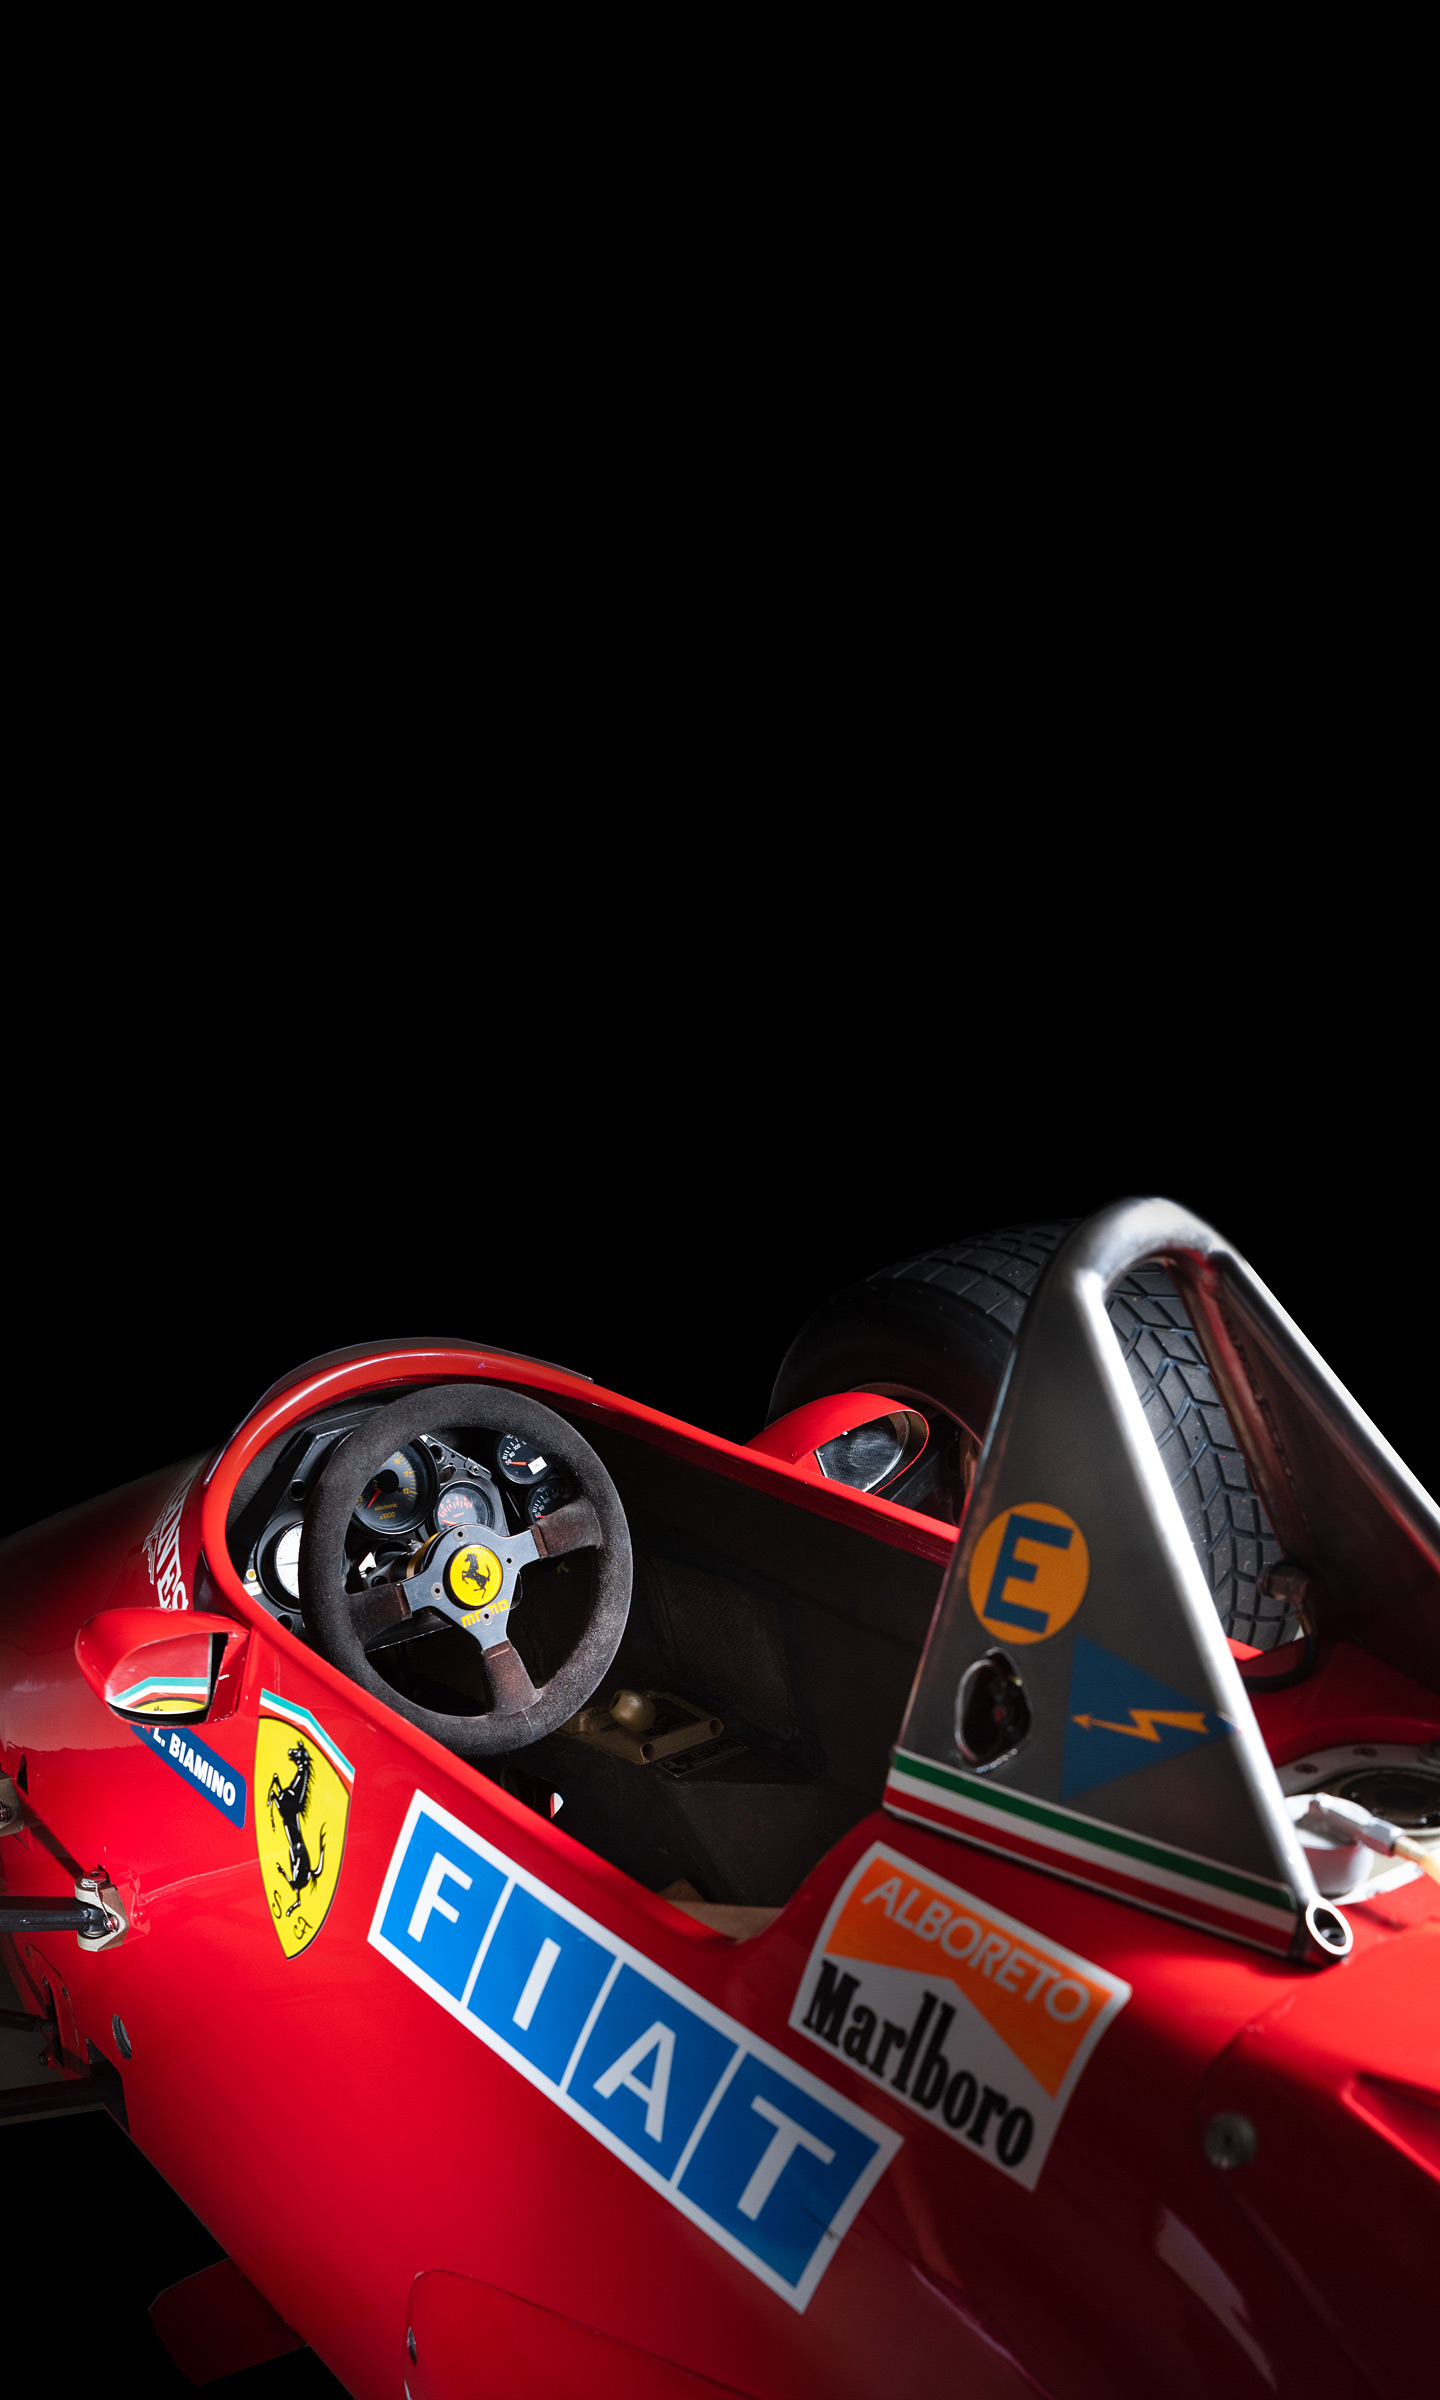  1984 Ferrari 126 C4 Wallpaper.